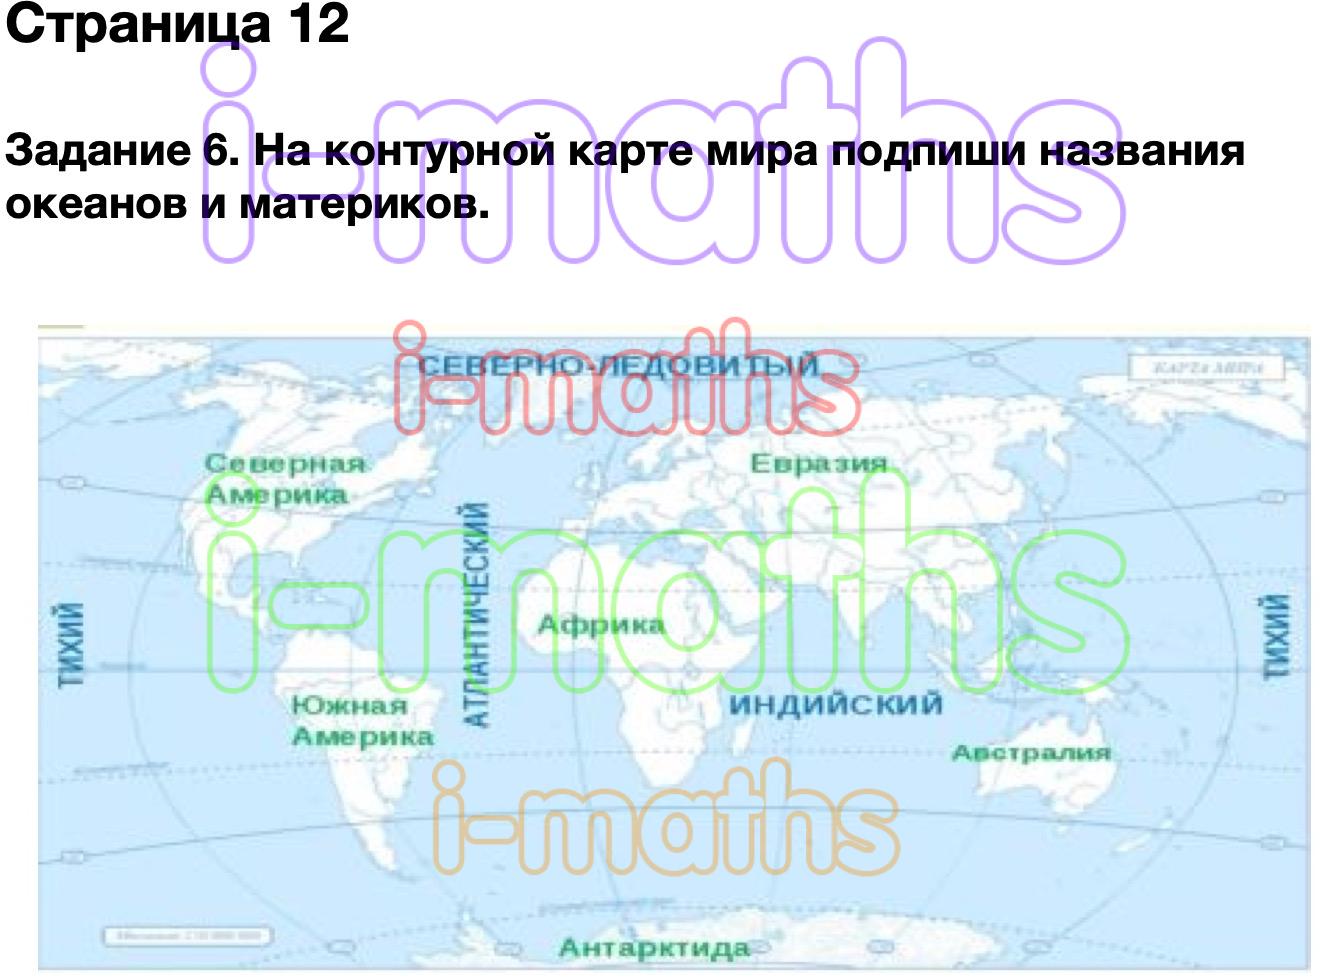 Карта это окружающий мир 2 класс. Россия на карте окружающий мир 2 класс видеоурок. Подпиши материки и океаны. Что такое карта 2 класс окружающий мир.